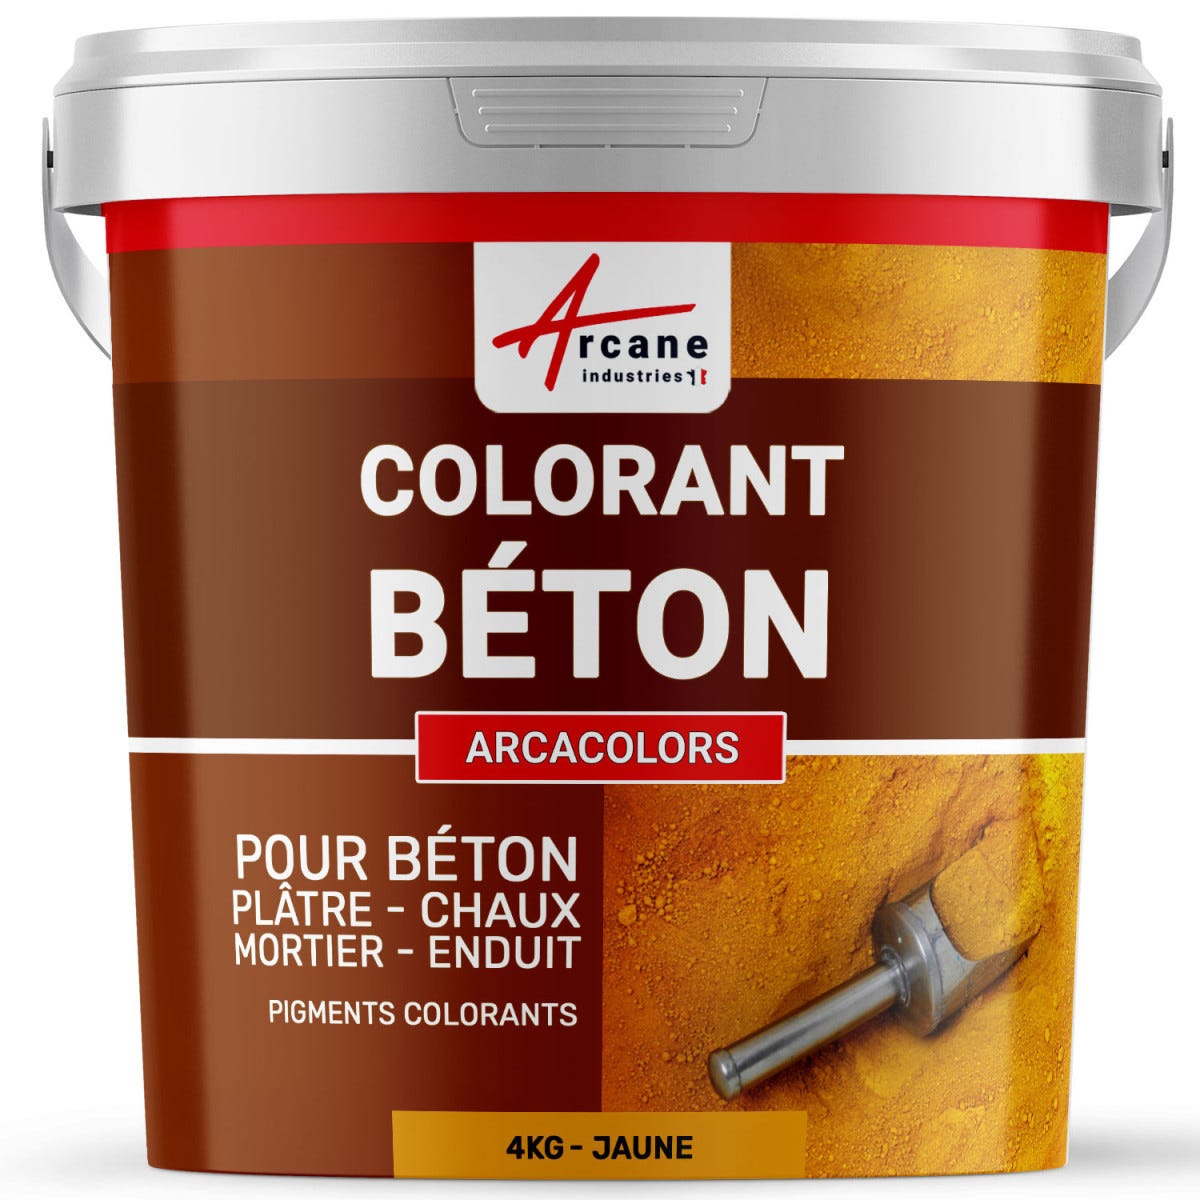 Pigments Colorants Premium pour enduit, béton, mortier, chaux, platre - ARCACOLORS - 4 kg - Vert - ARCANE INDUSTRIES 5